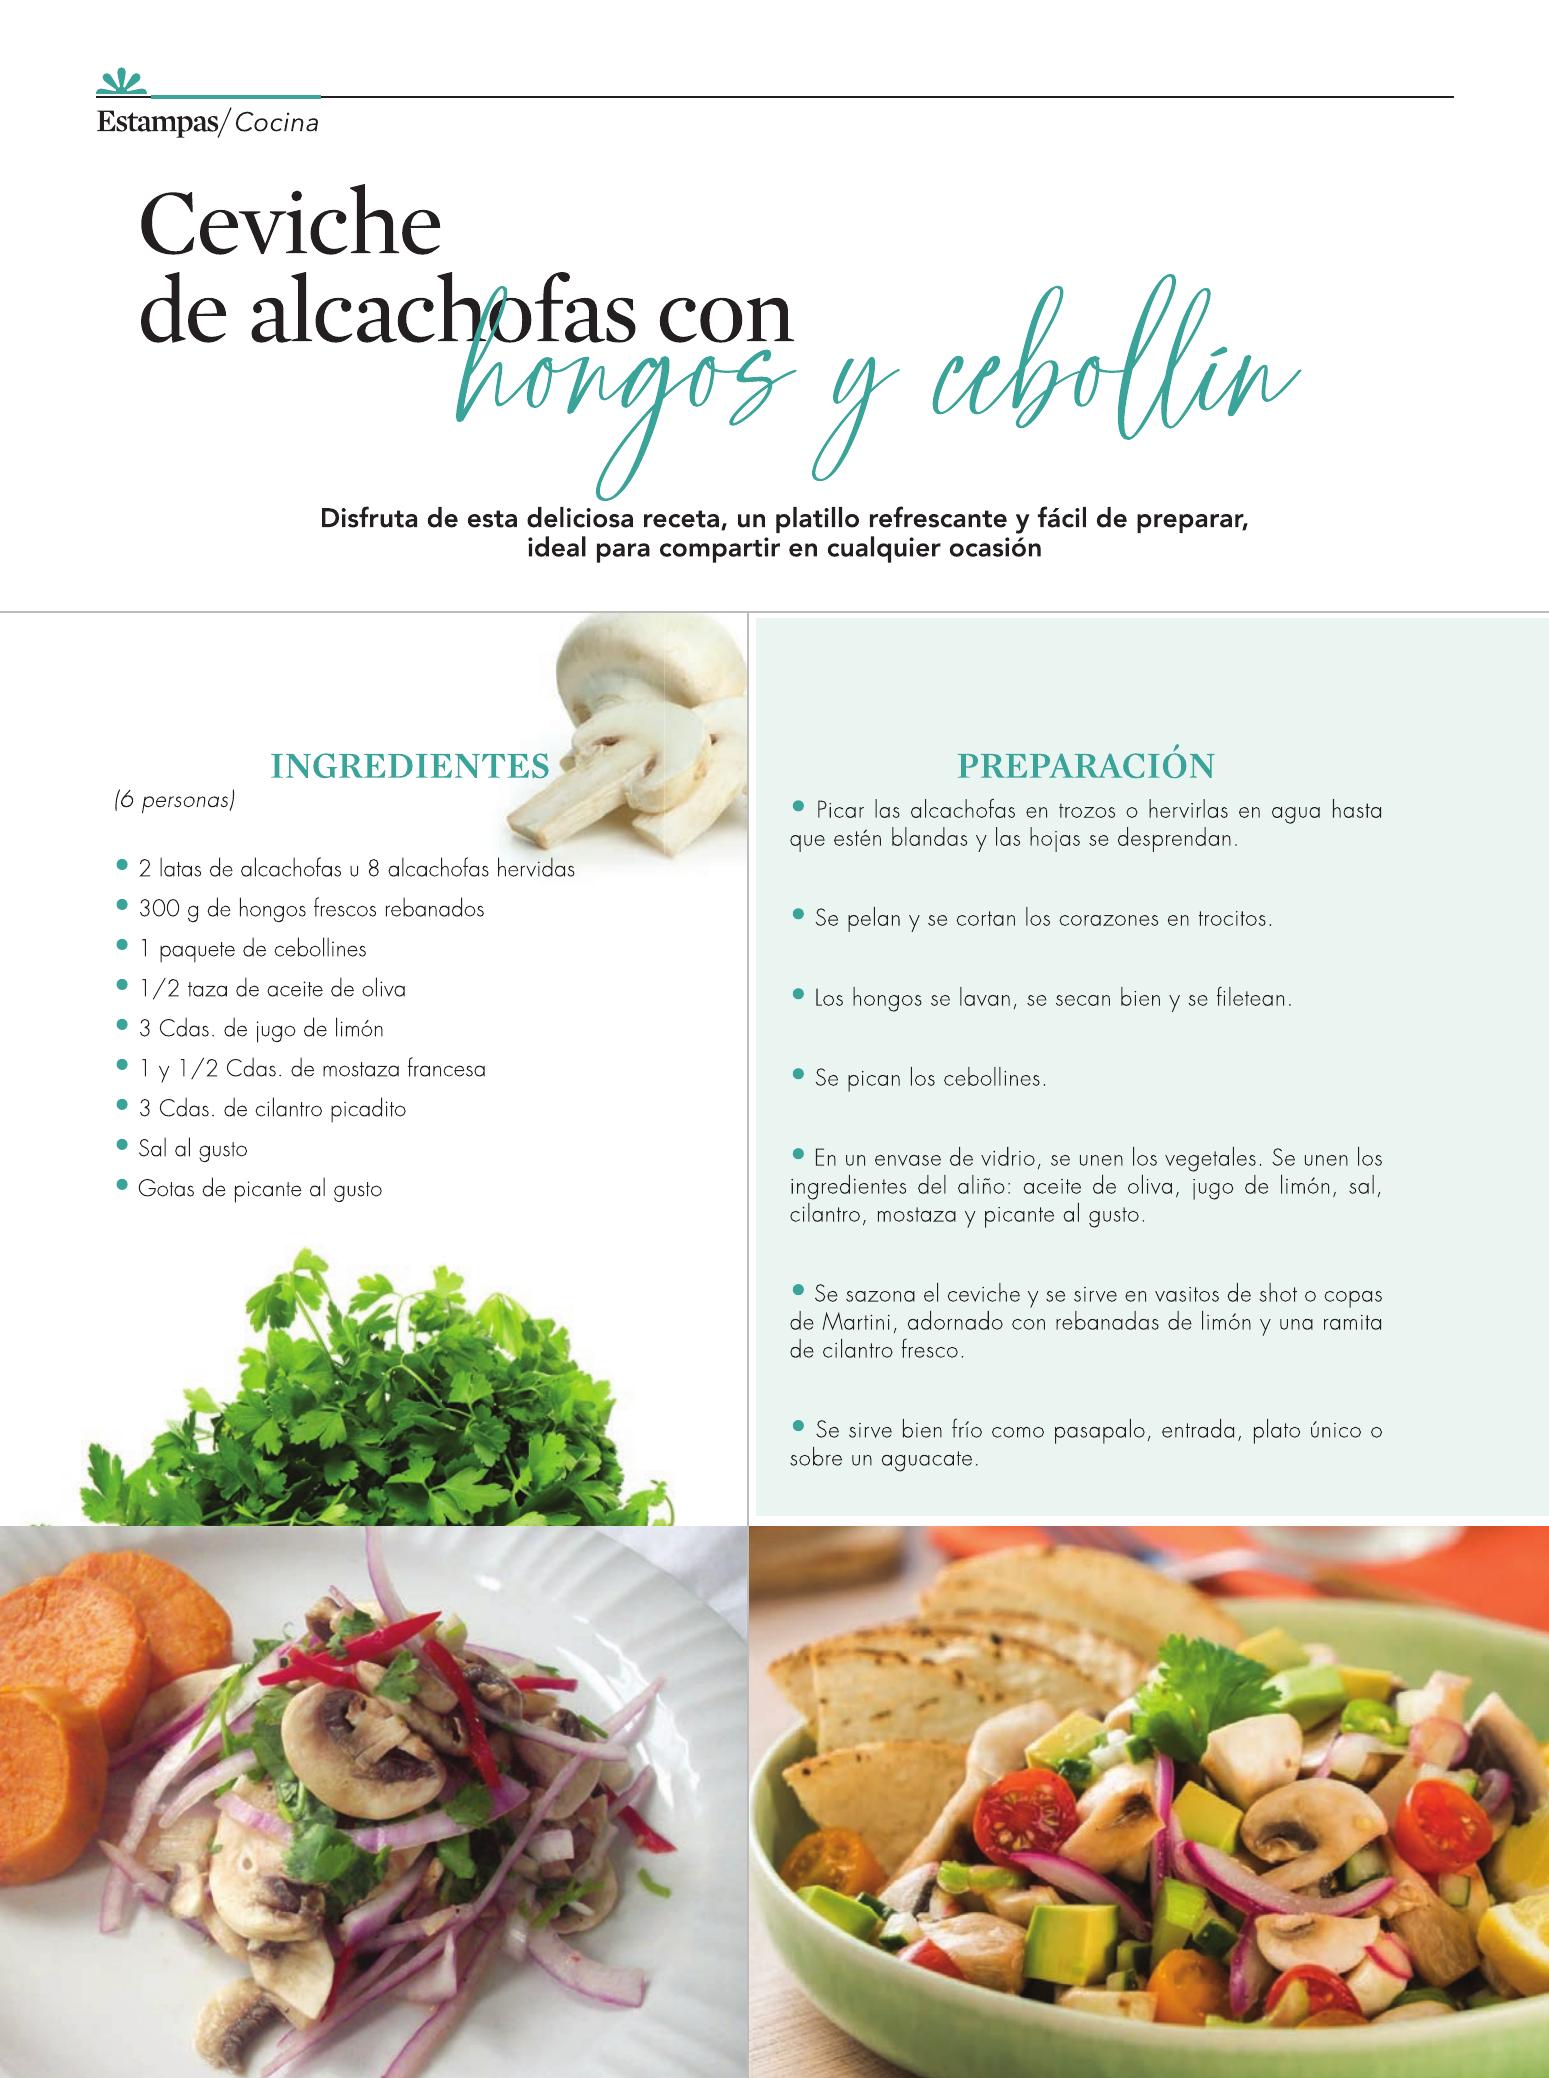 34-REV Ceviche de alcachofas con hongos y cebollin